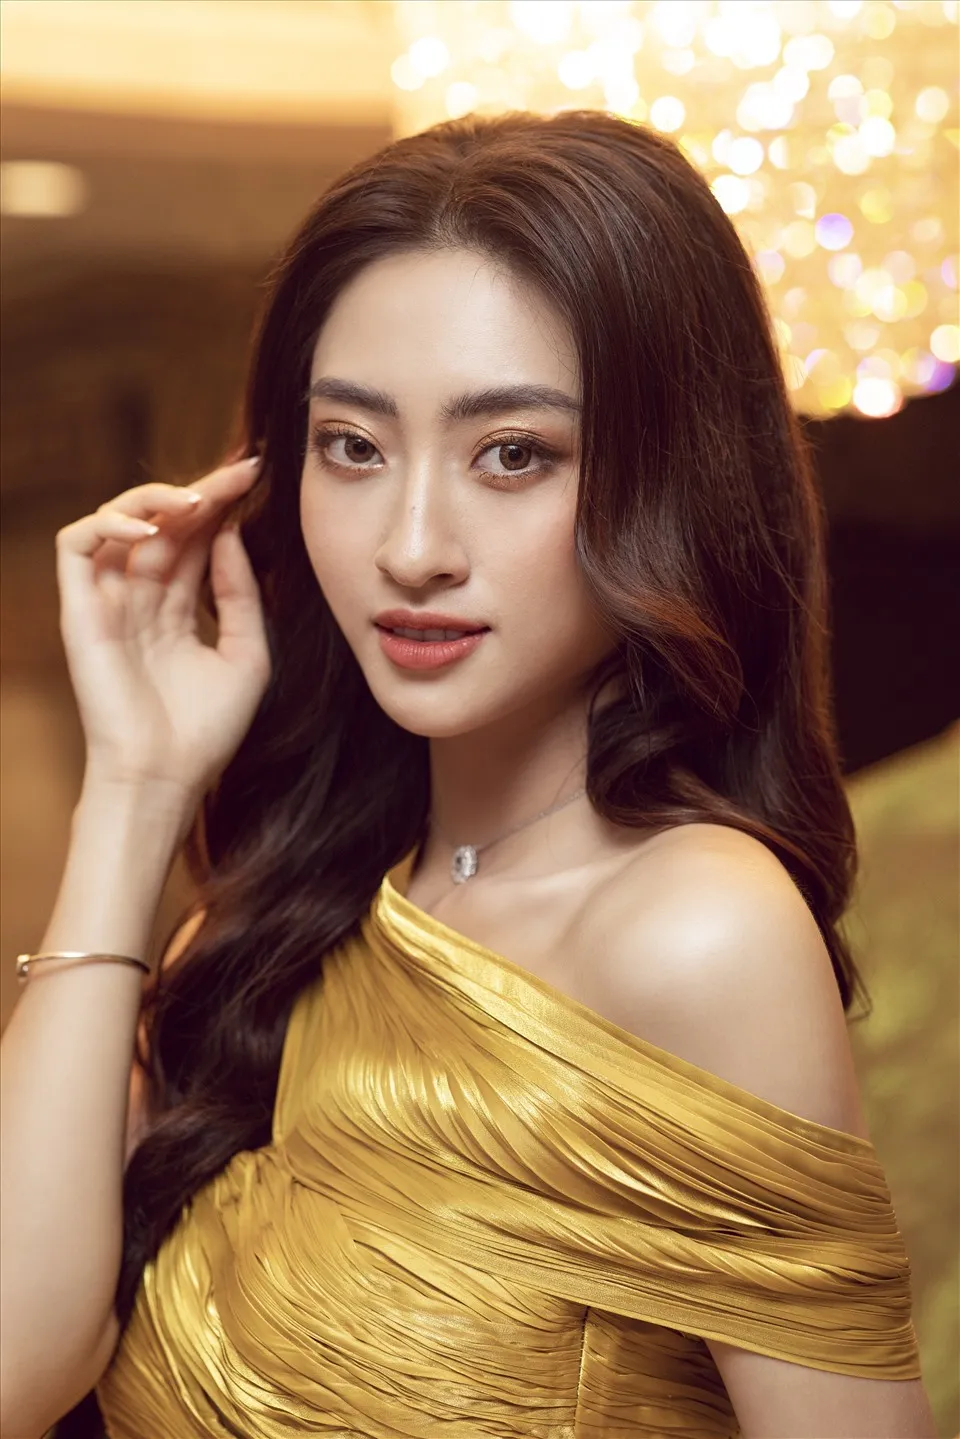 Hoa hậu Lương Thùy Linh gặp vấn đề sức khỏe khiến fan lo lắng